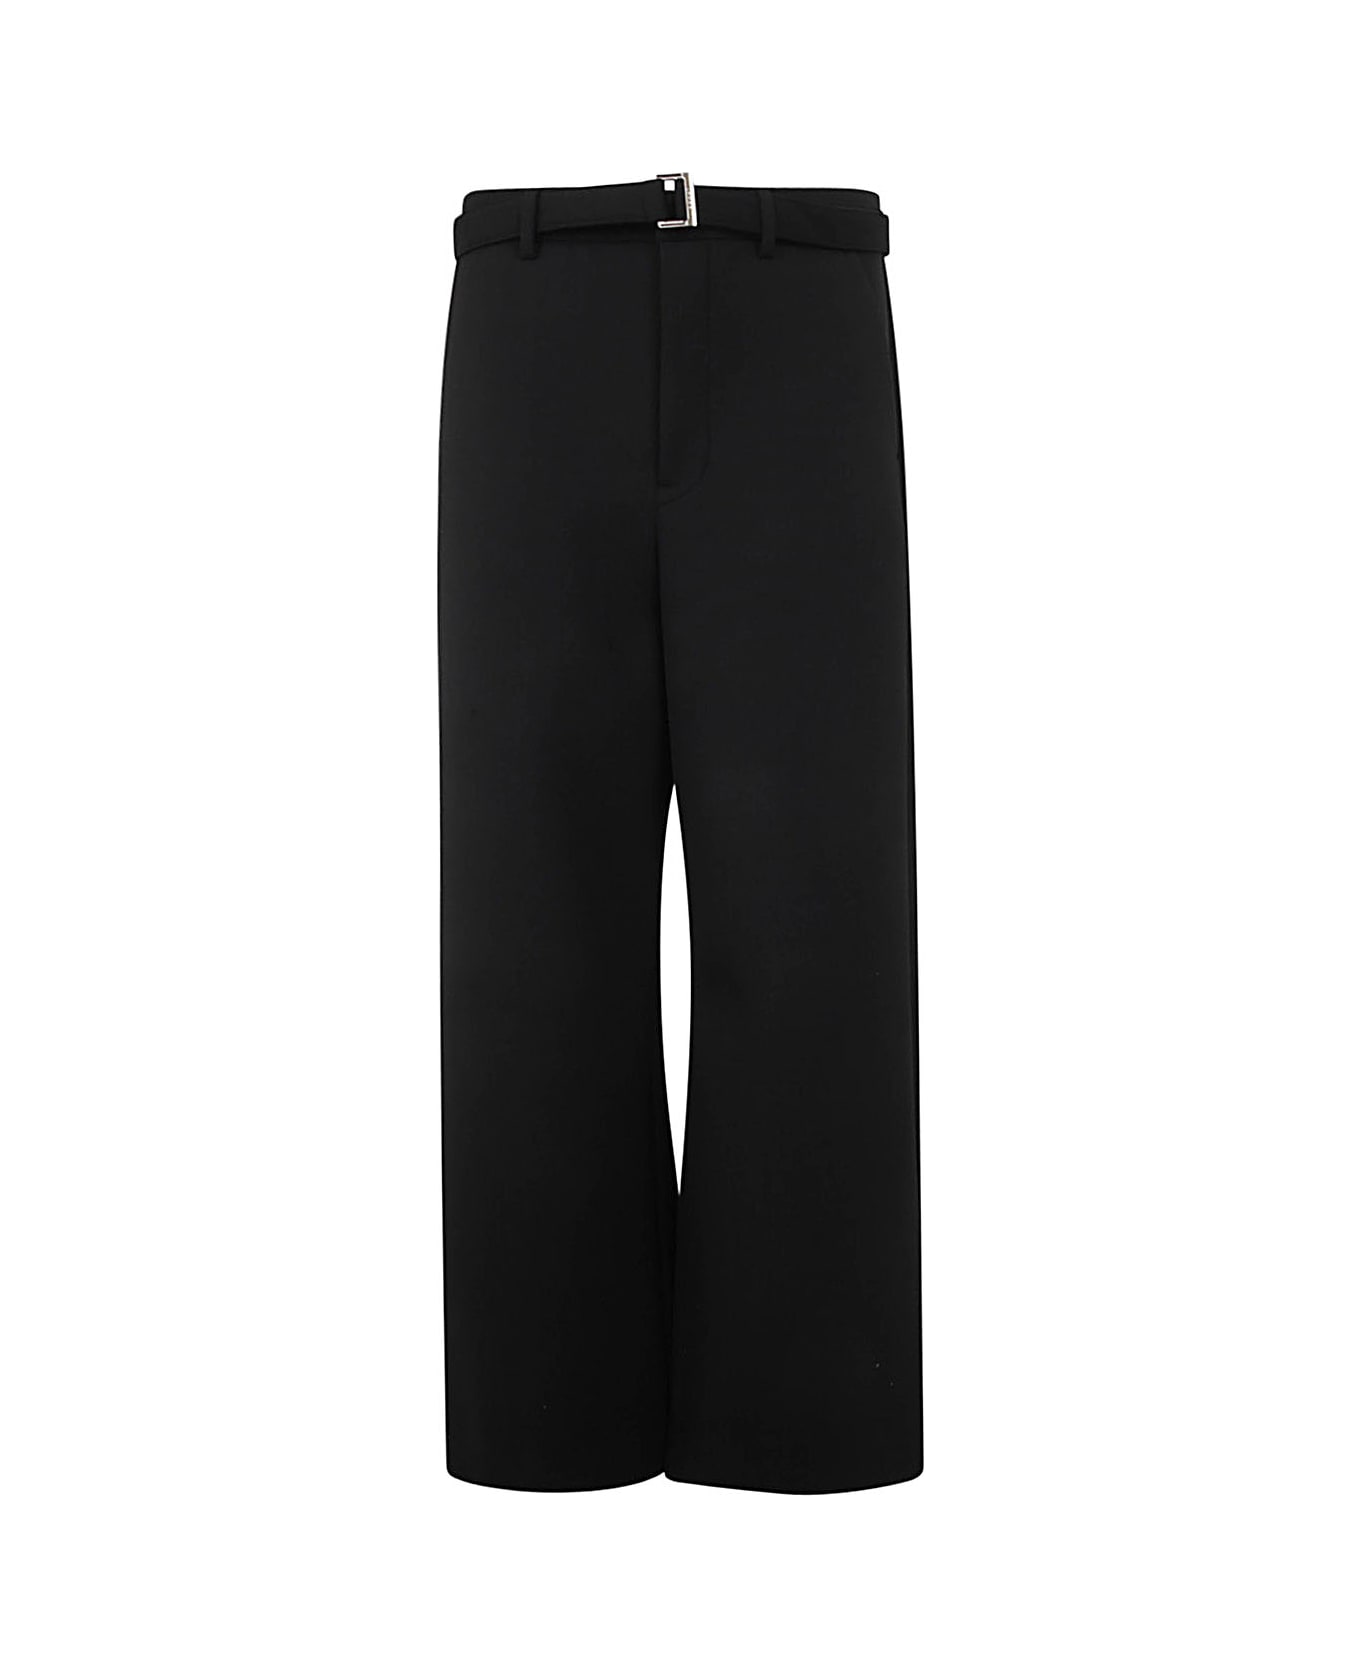 Sacai Suiting Bonding Pants - Black ボトムス